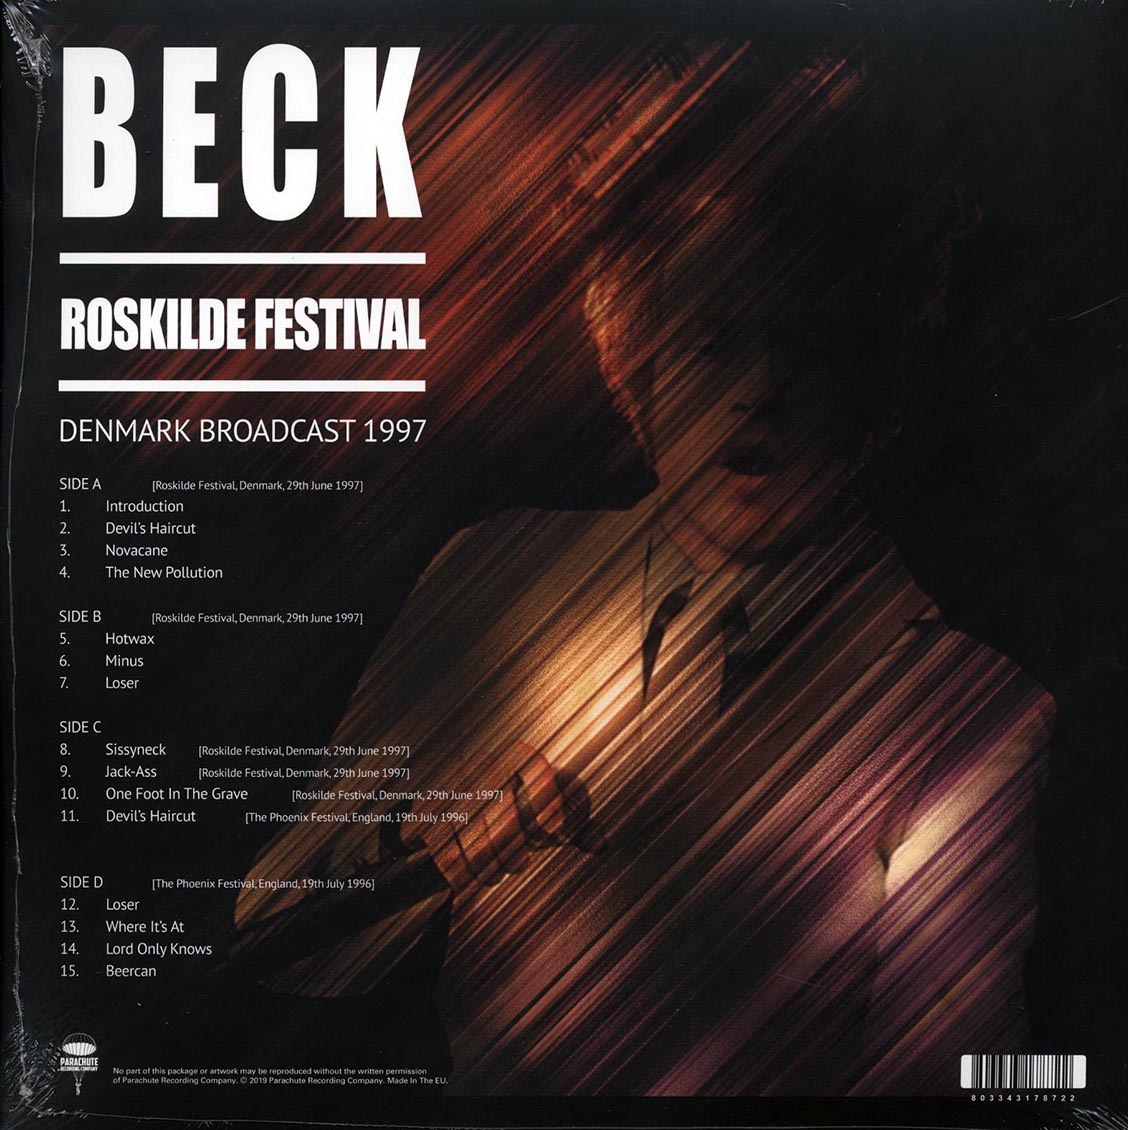 Beck - Roskilde Festival: Denmark Broadcast 1997